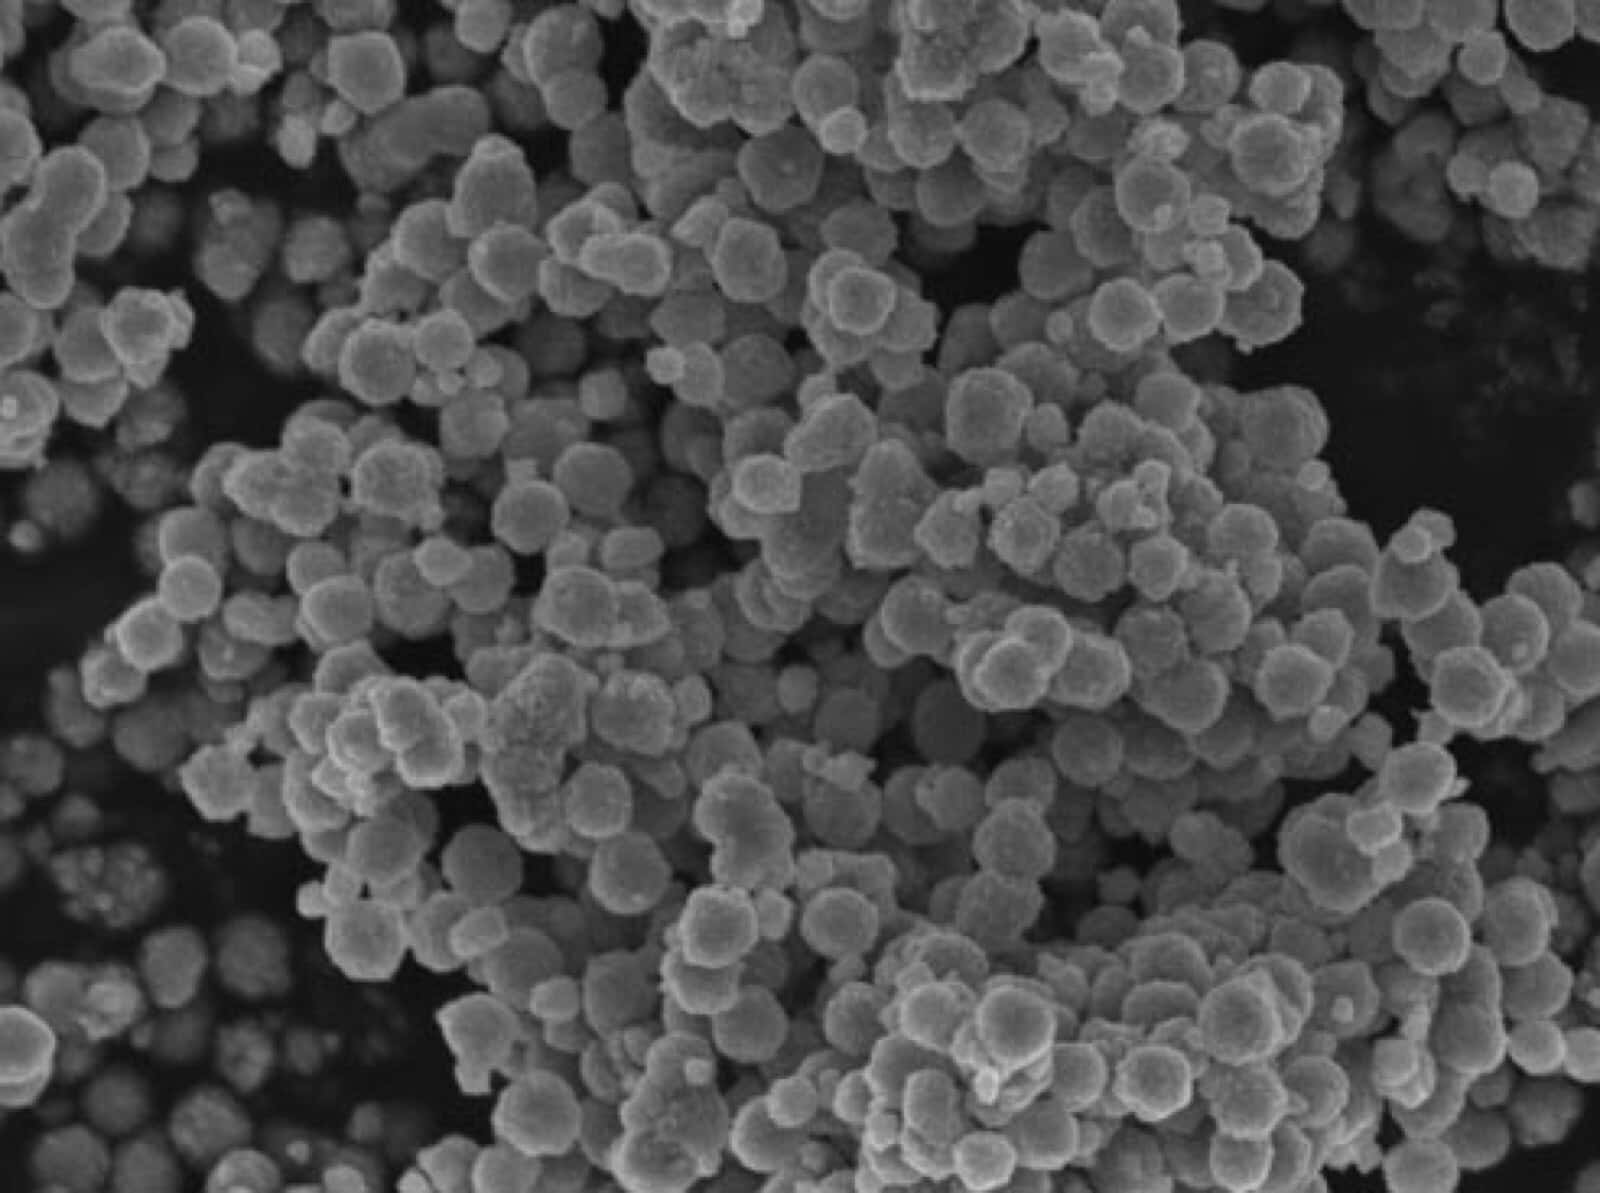 titanium dioxide nanoparticles